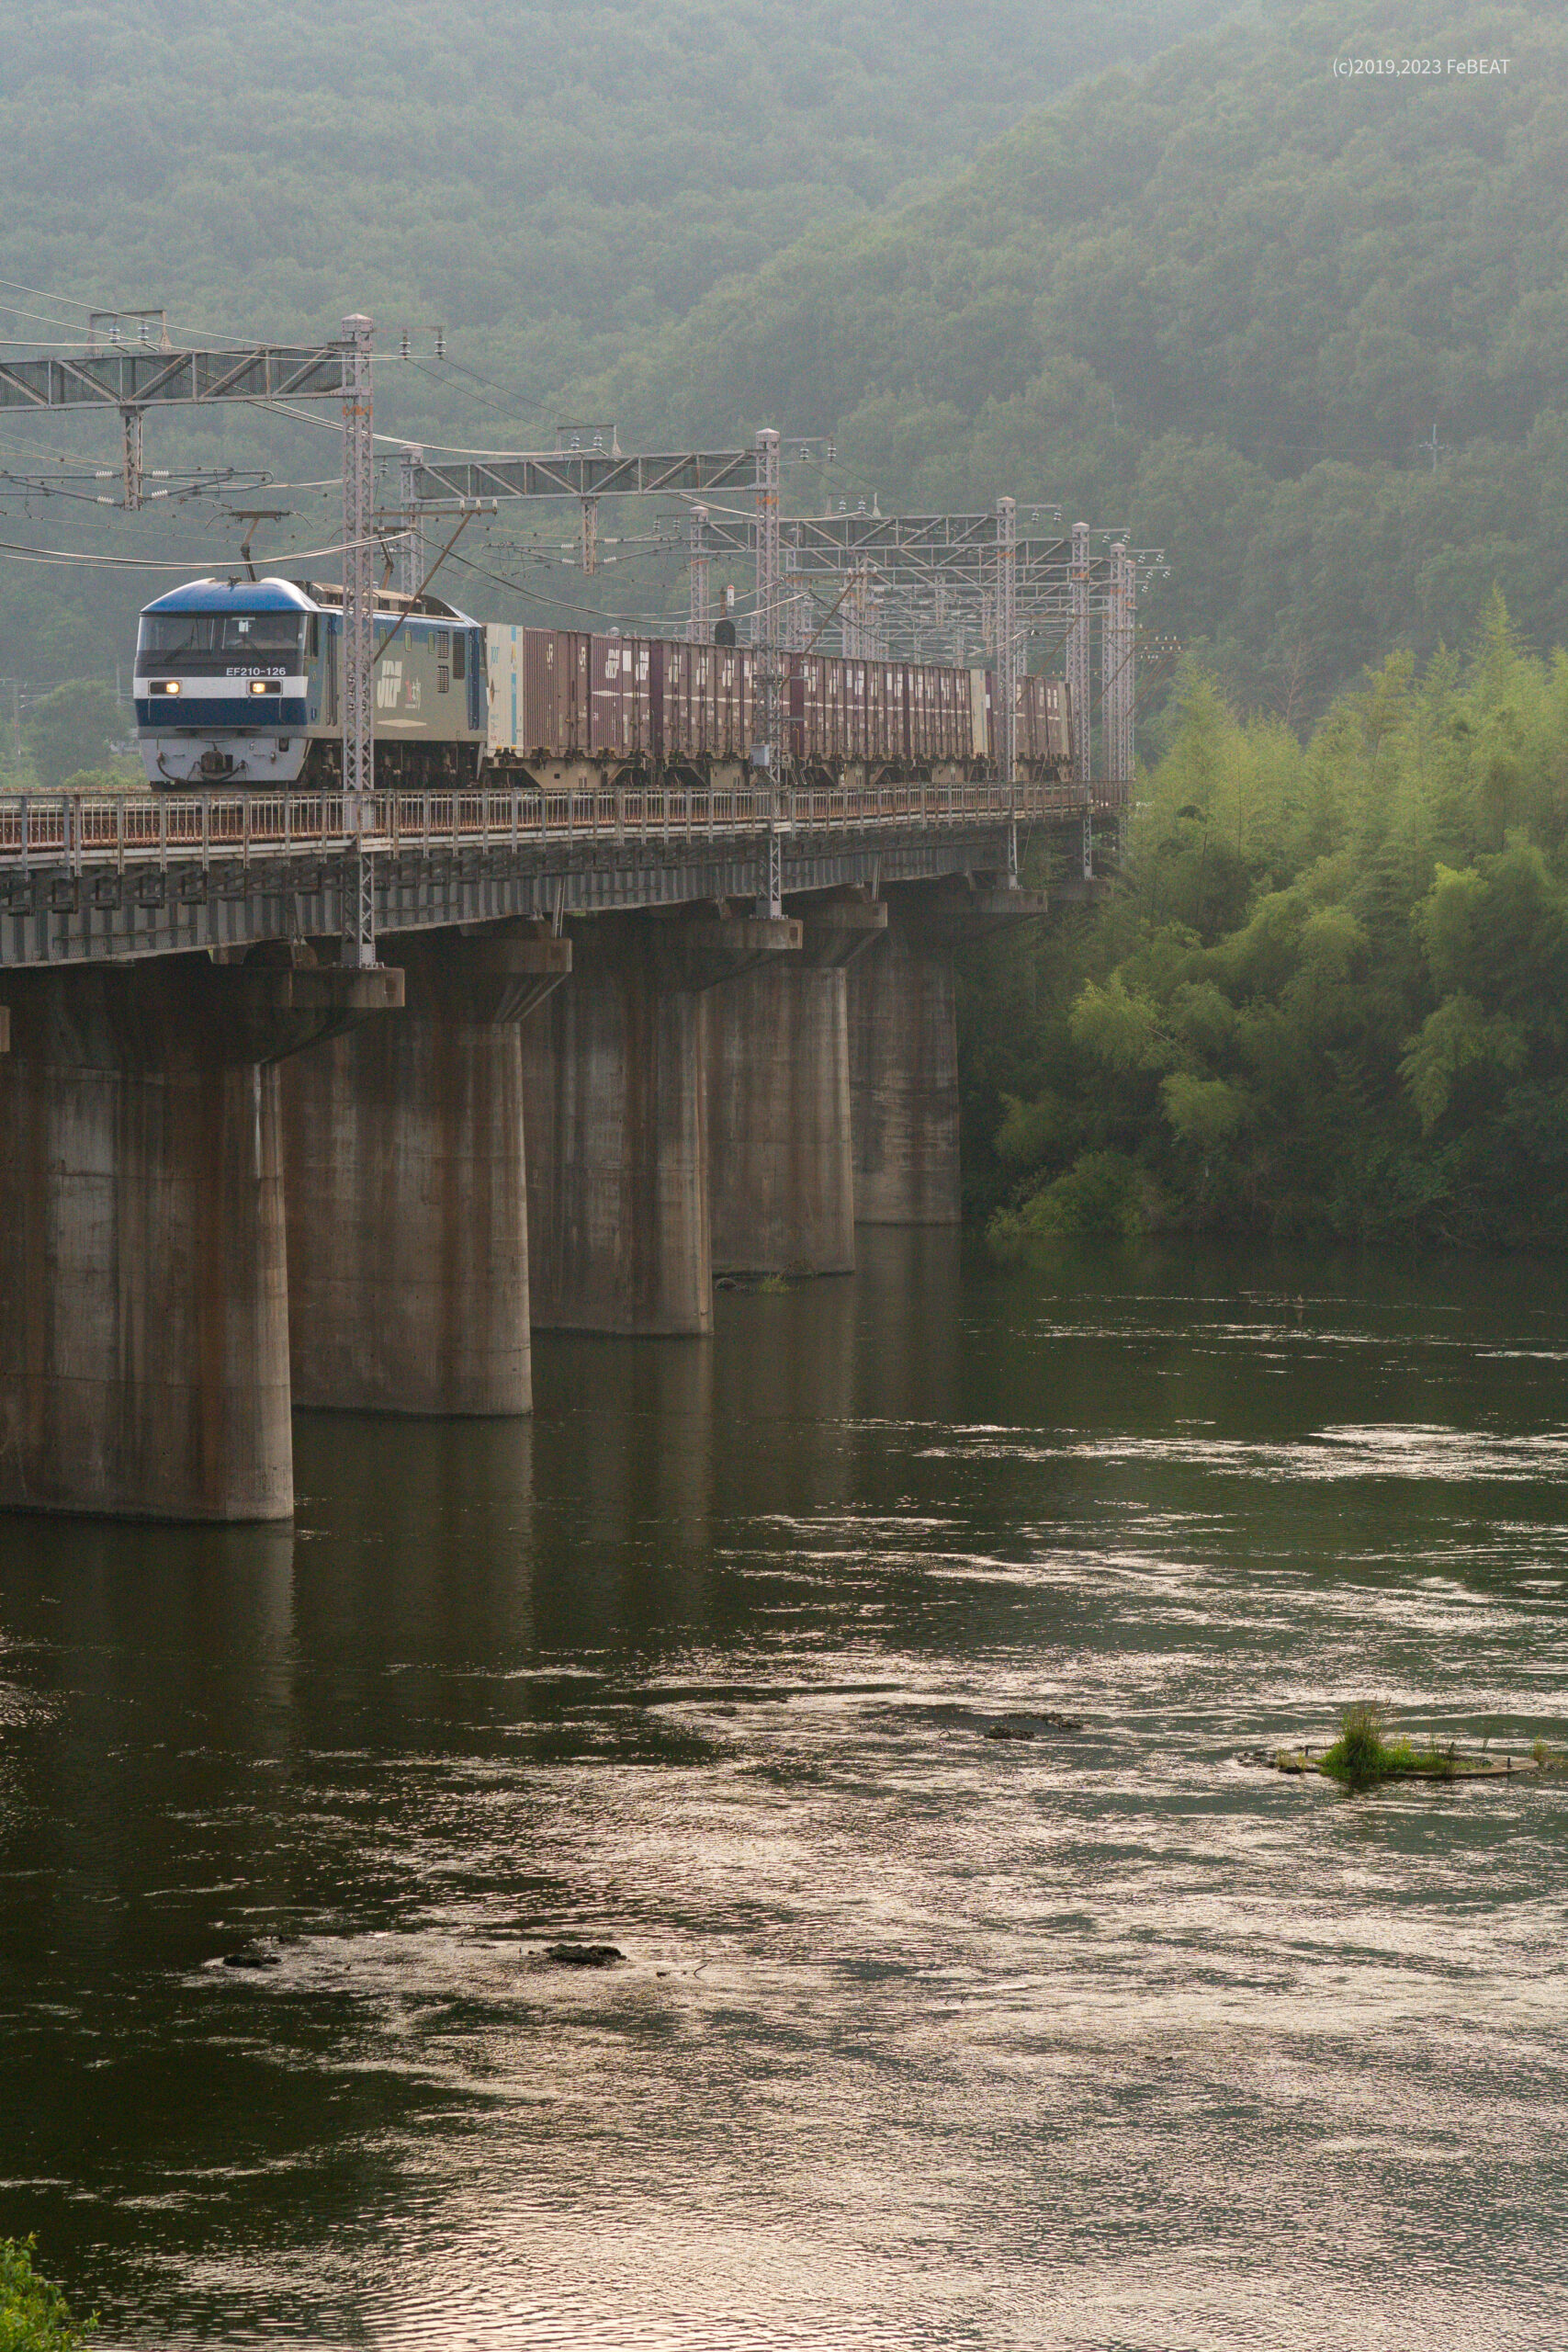 吉井川橋梁を渡り山陽本線を熊山から万富へと走るEF210形牽引のコンテナ貨物列車